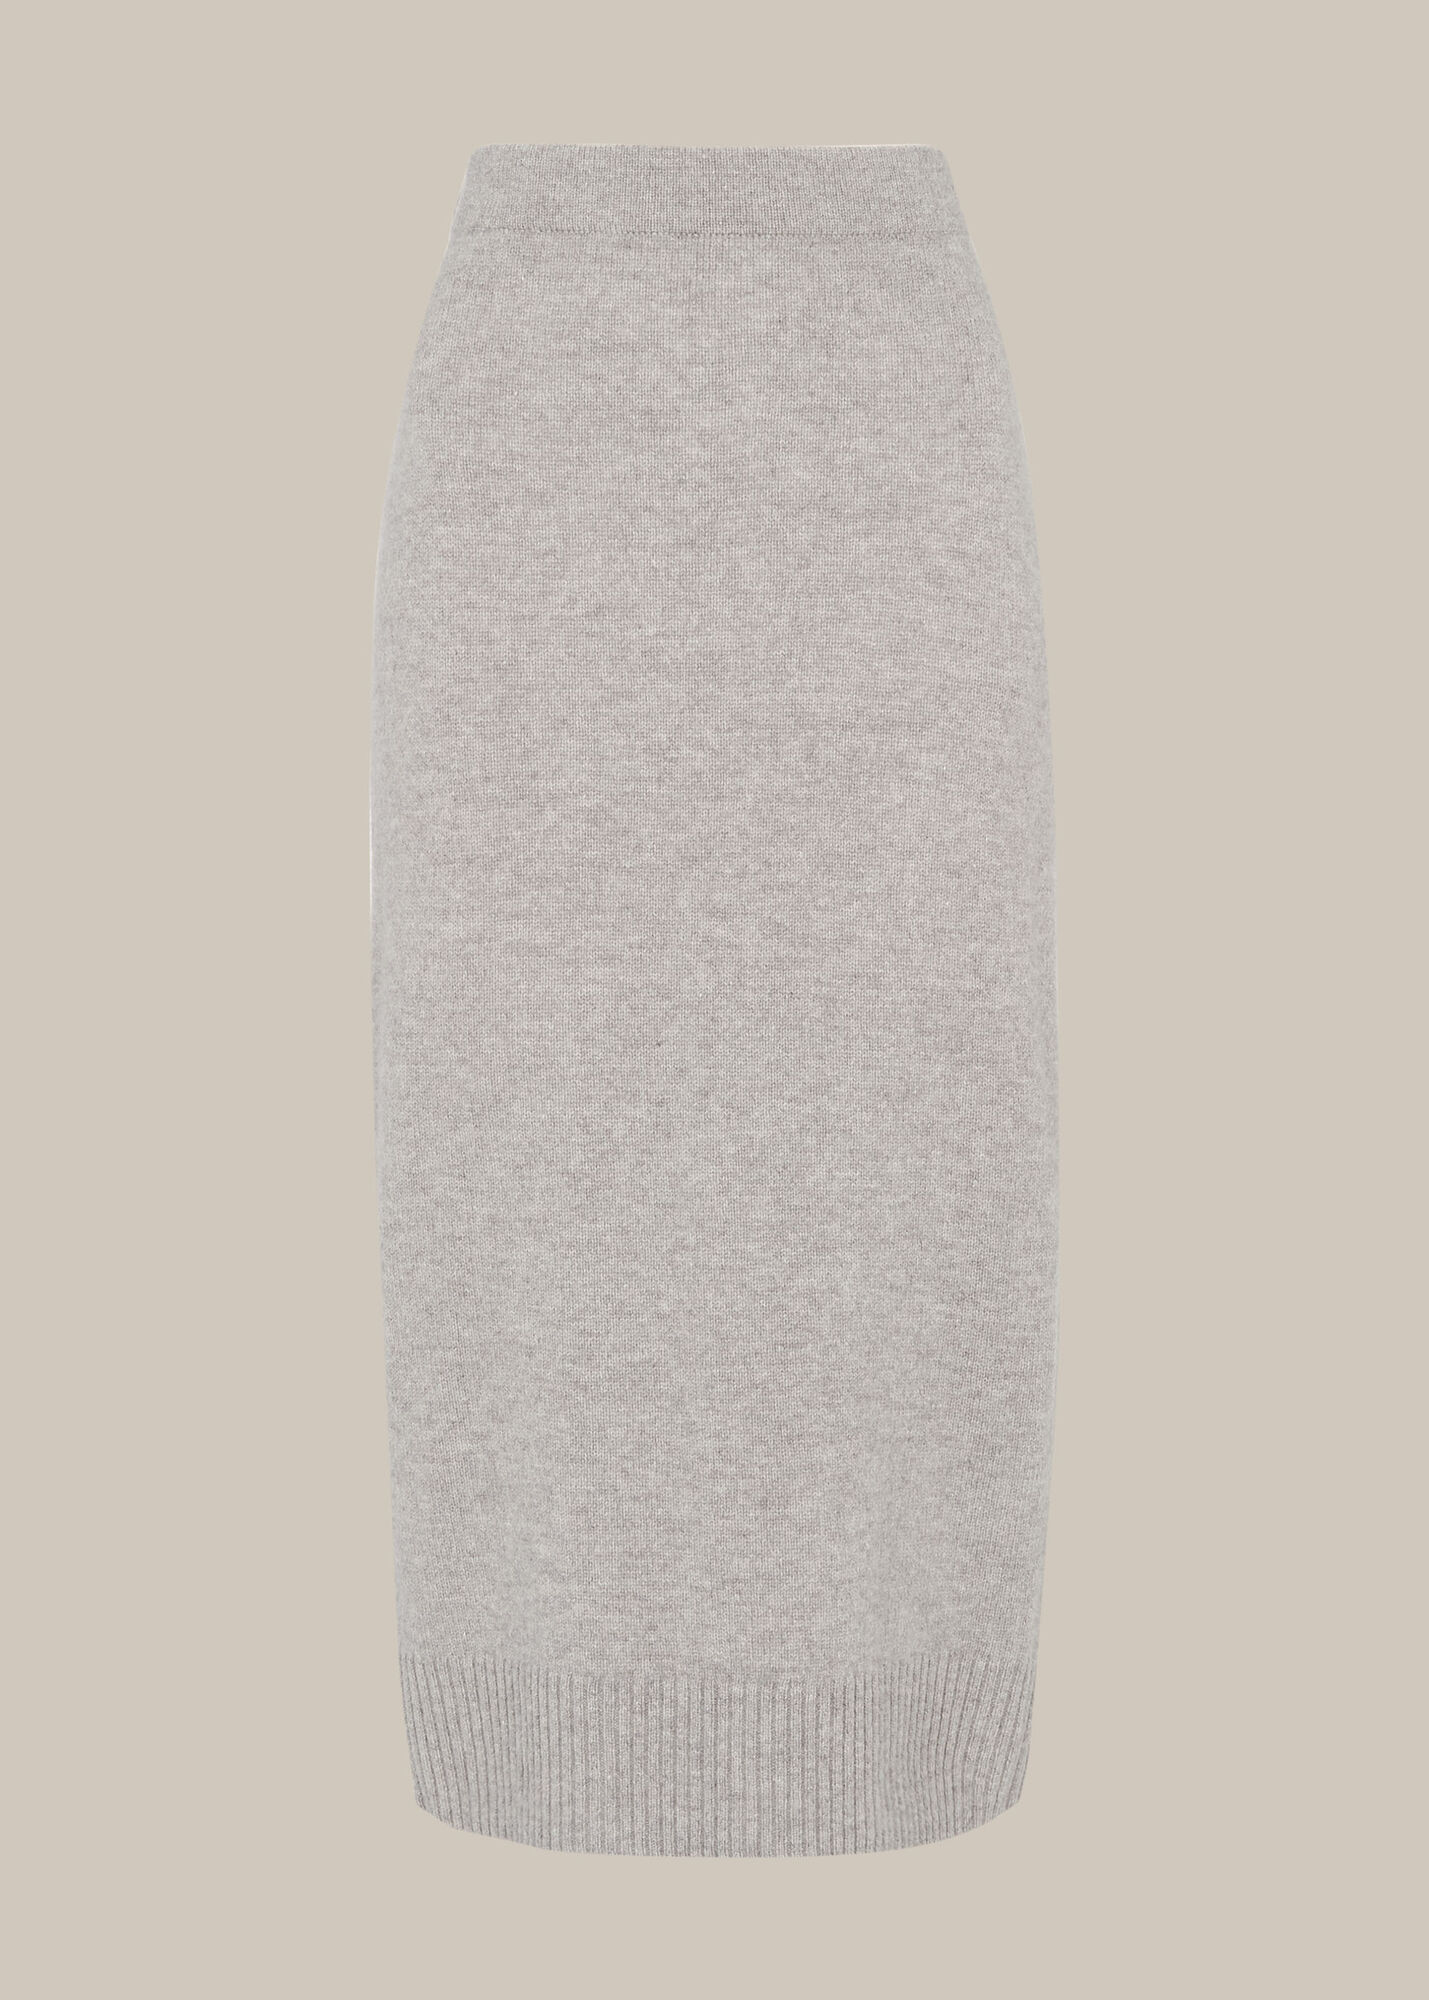 Grey Knitted Merino Wool Tube Skirt | WHISTLES